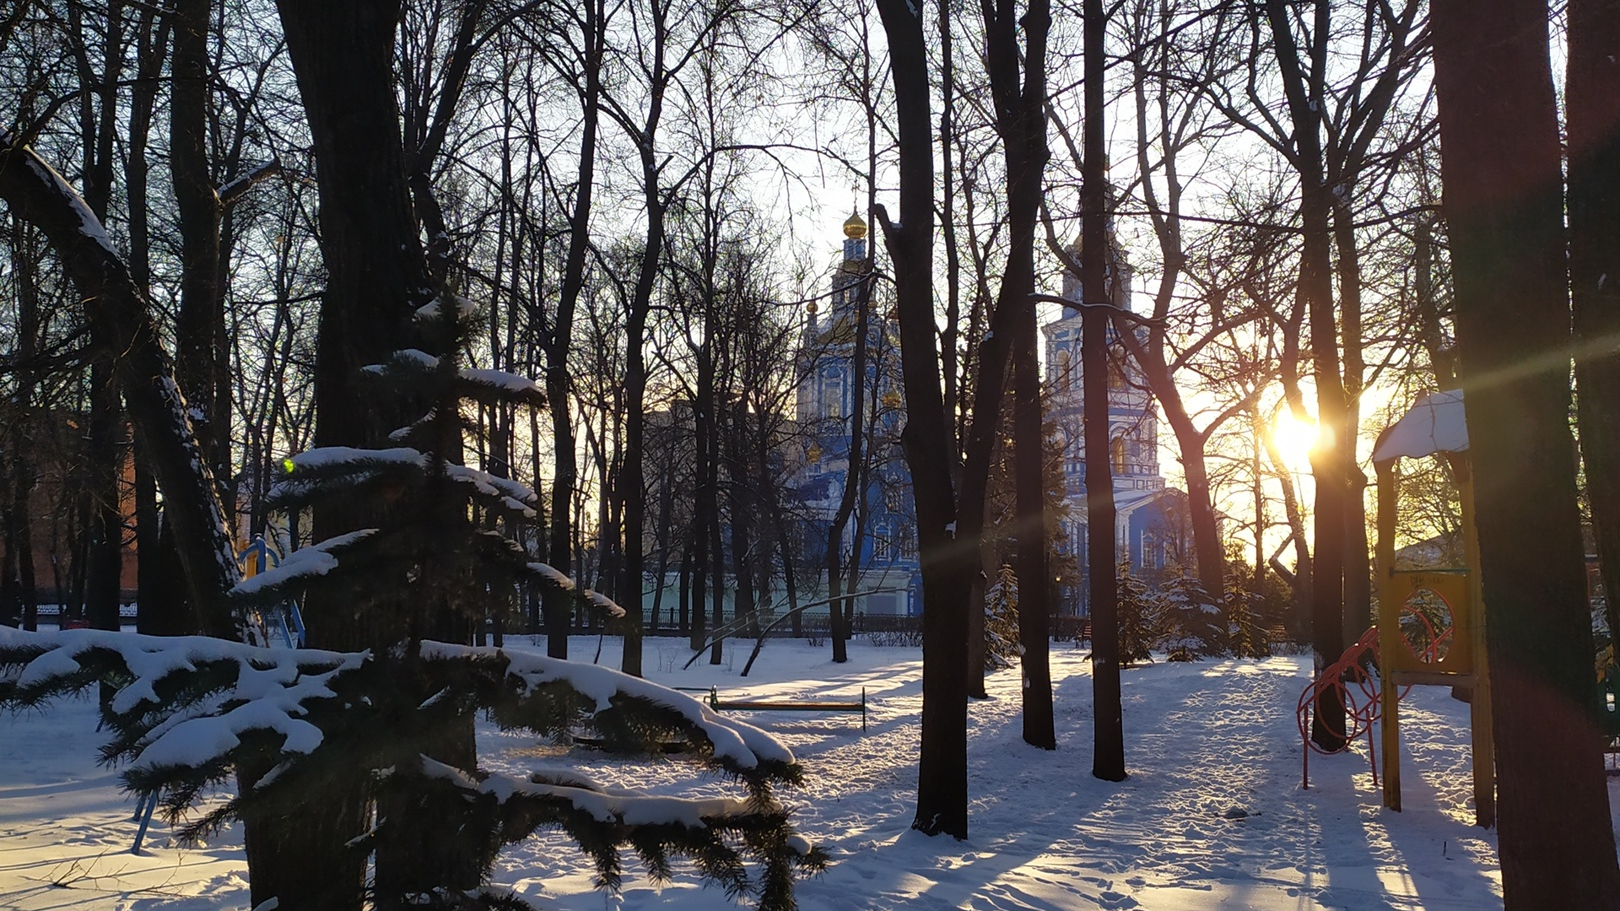 Ульяновск сейчас снег есть?. Погода в ульяновске в феврале